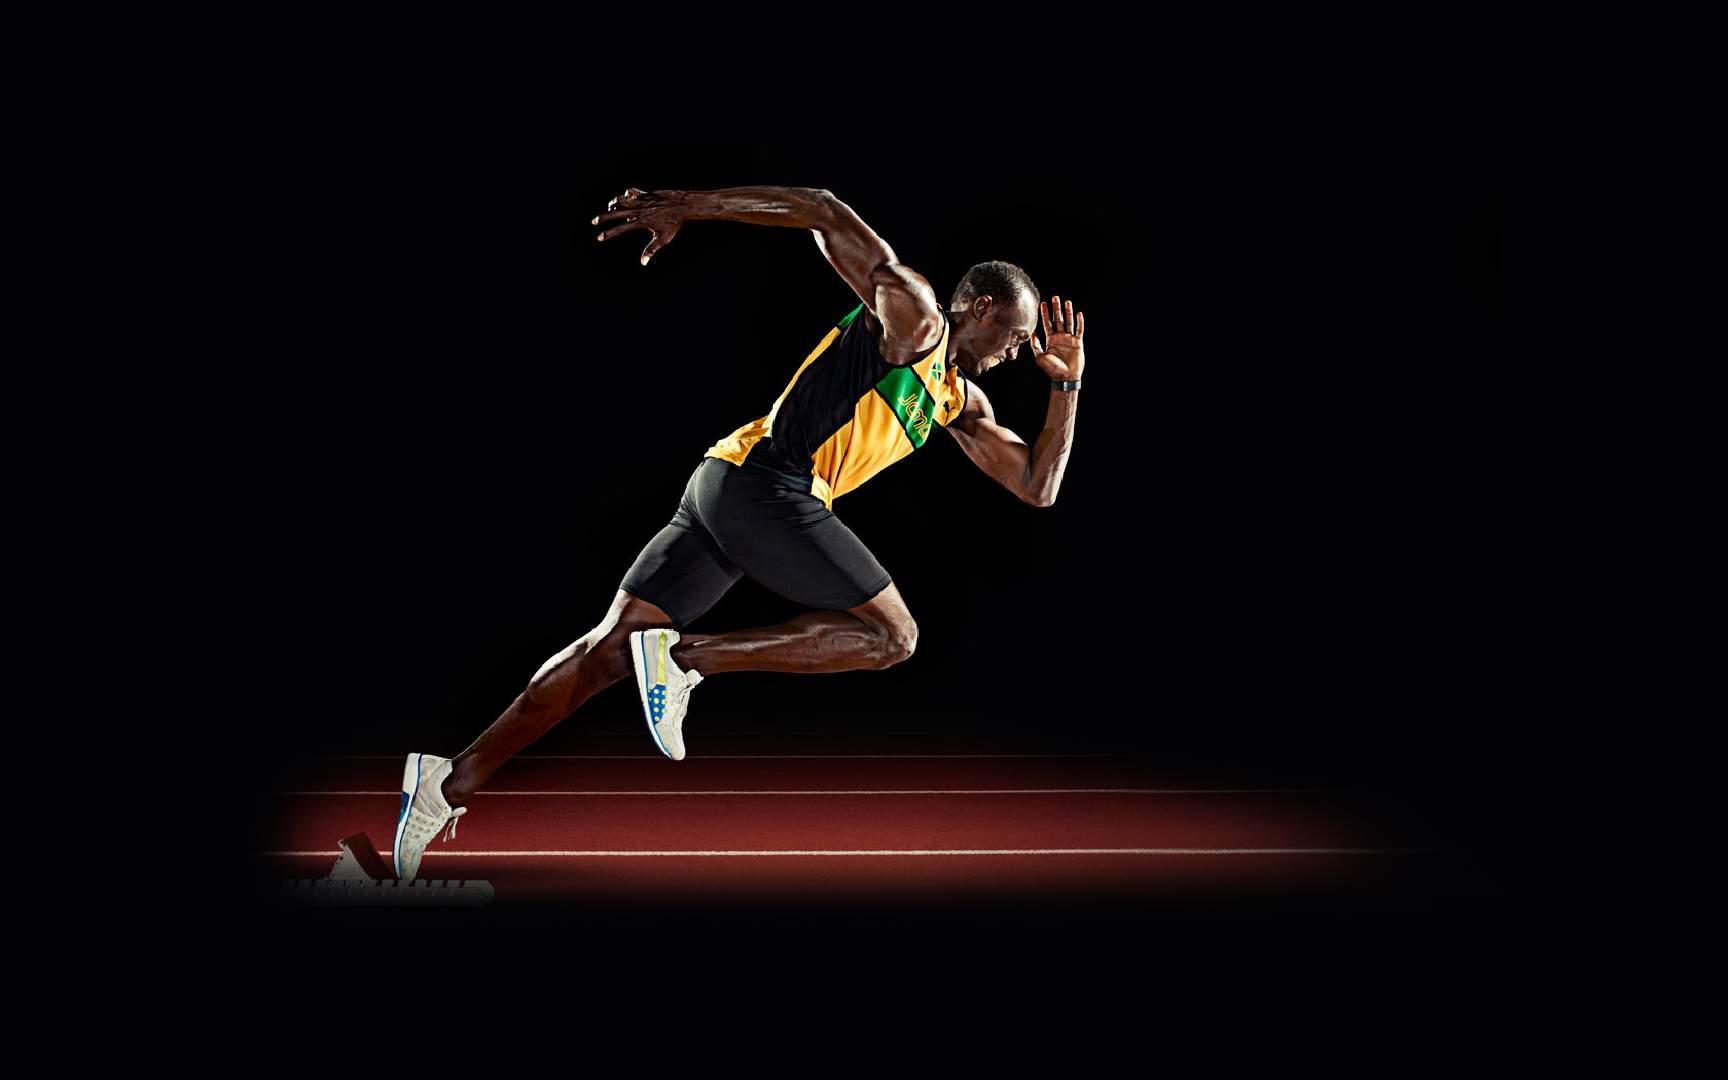 Usain Bolt Wallpaper, 49 Usain Bolt HD Wallpaper Background, T4